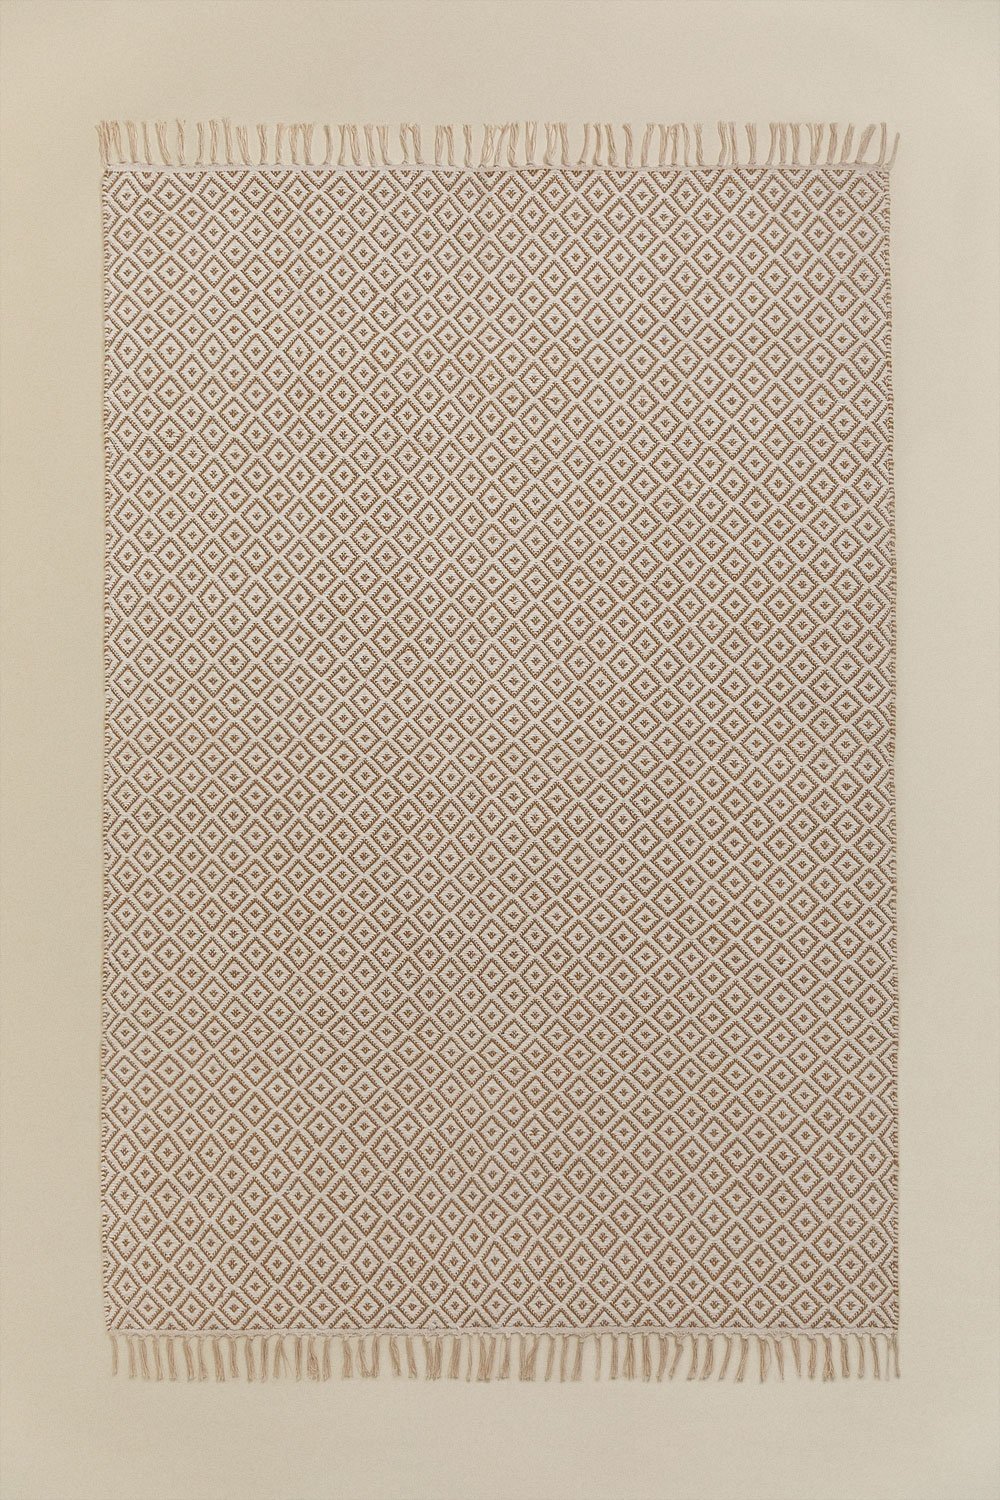 Durat cotton & jute rug  (175x122 cm) , gallery image 1